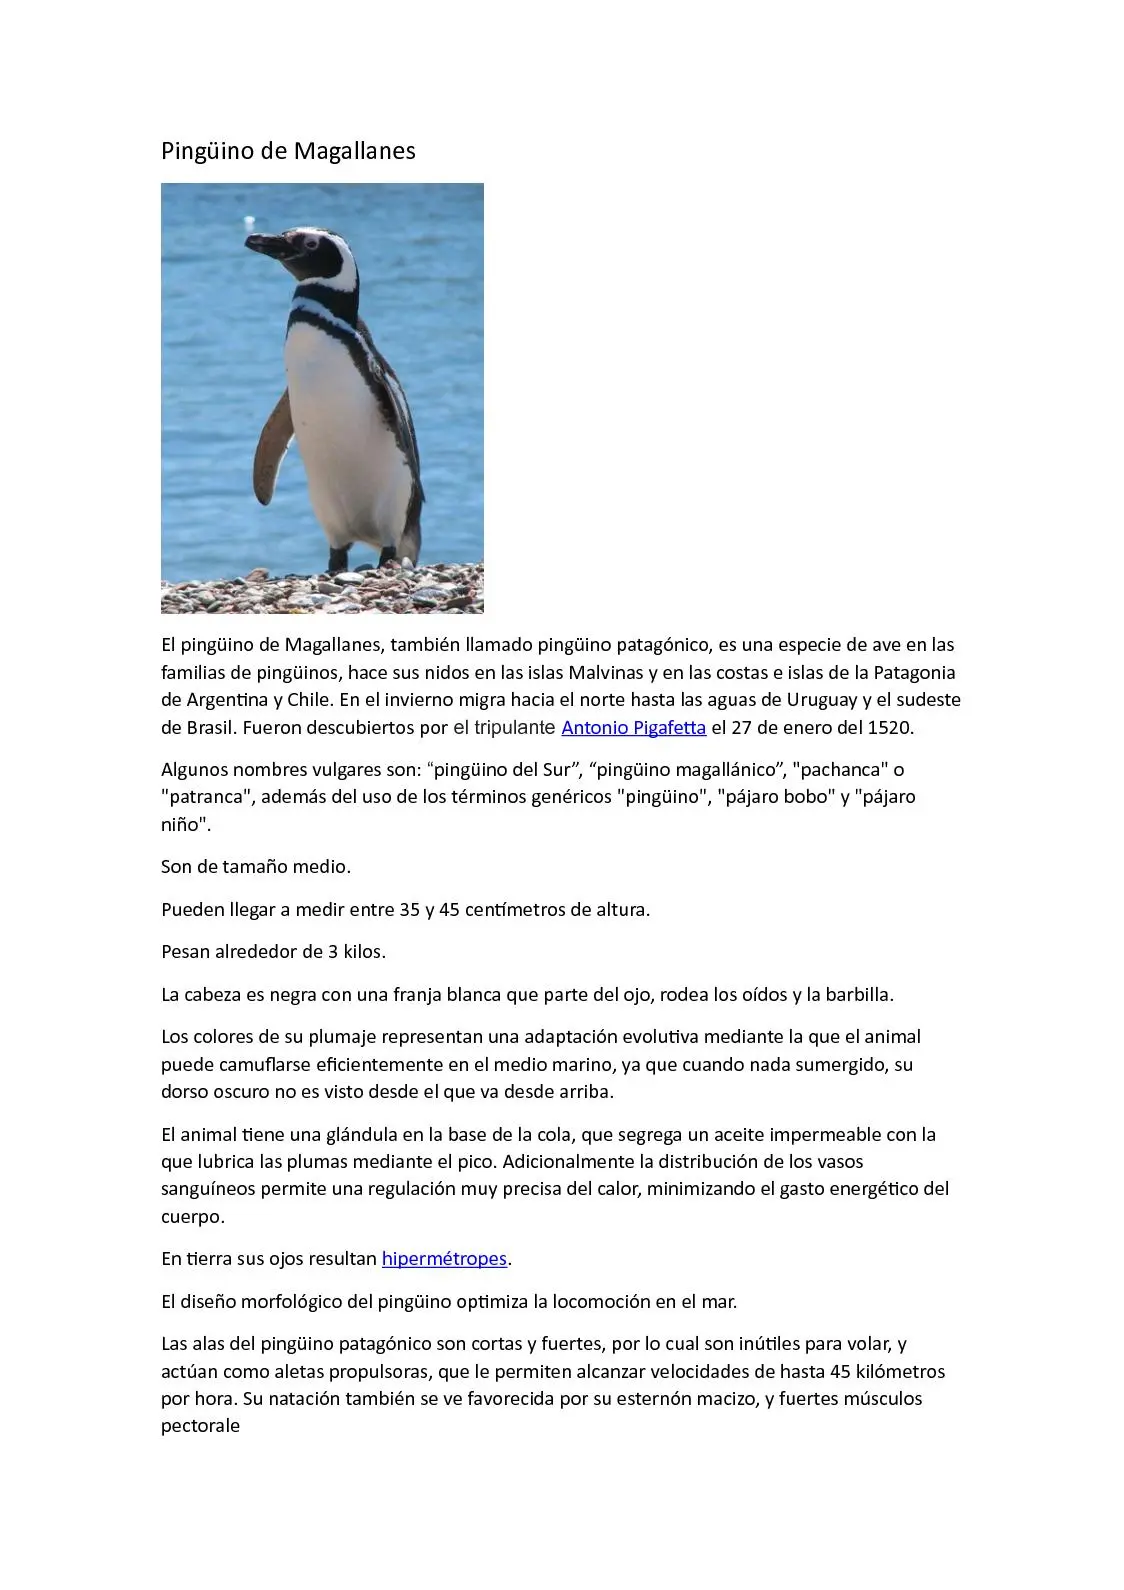 colonias de nidificacion de pinguinos en las costas patagonicas resumen - Dónde hacen los nidos los pingüinos